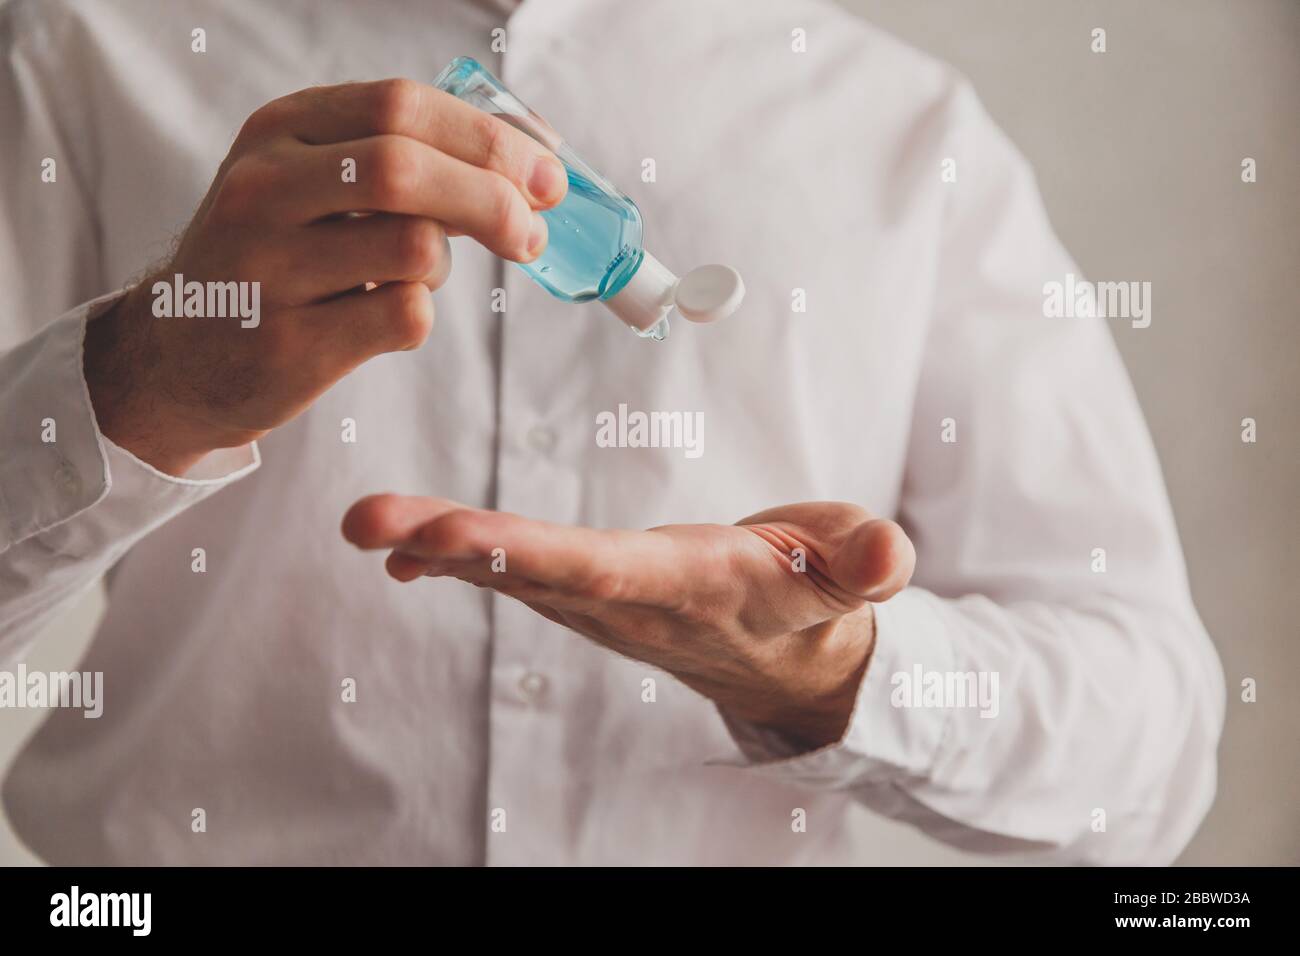 Homme en chemise blanche à l'aide d'un distributeur de gel désinfectant pour les mains, coronavirus Covid-19 dans les lieux publics. Concept d'antiseptique, d'hygiène et de soins de santé Banque D'Images